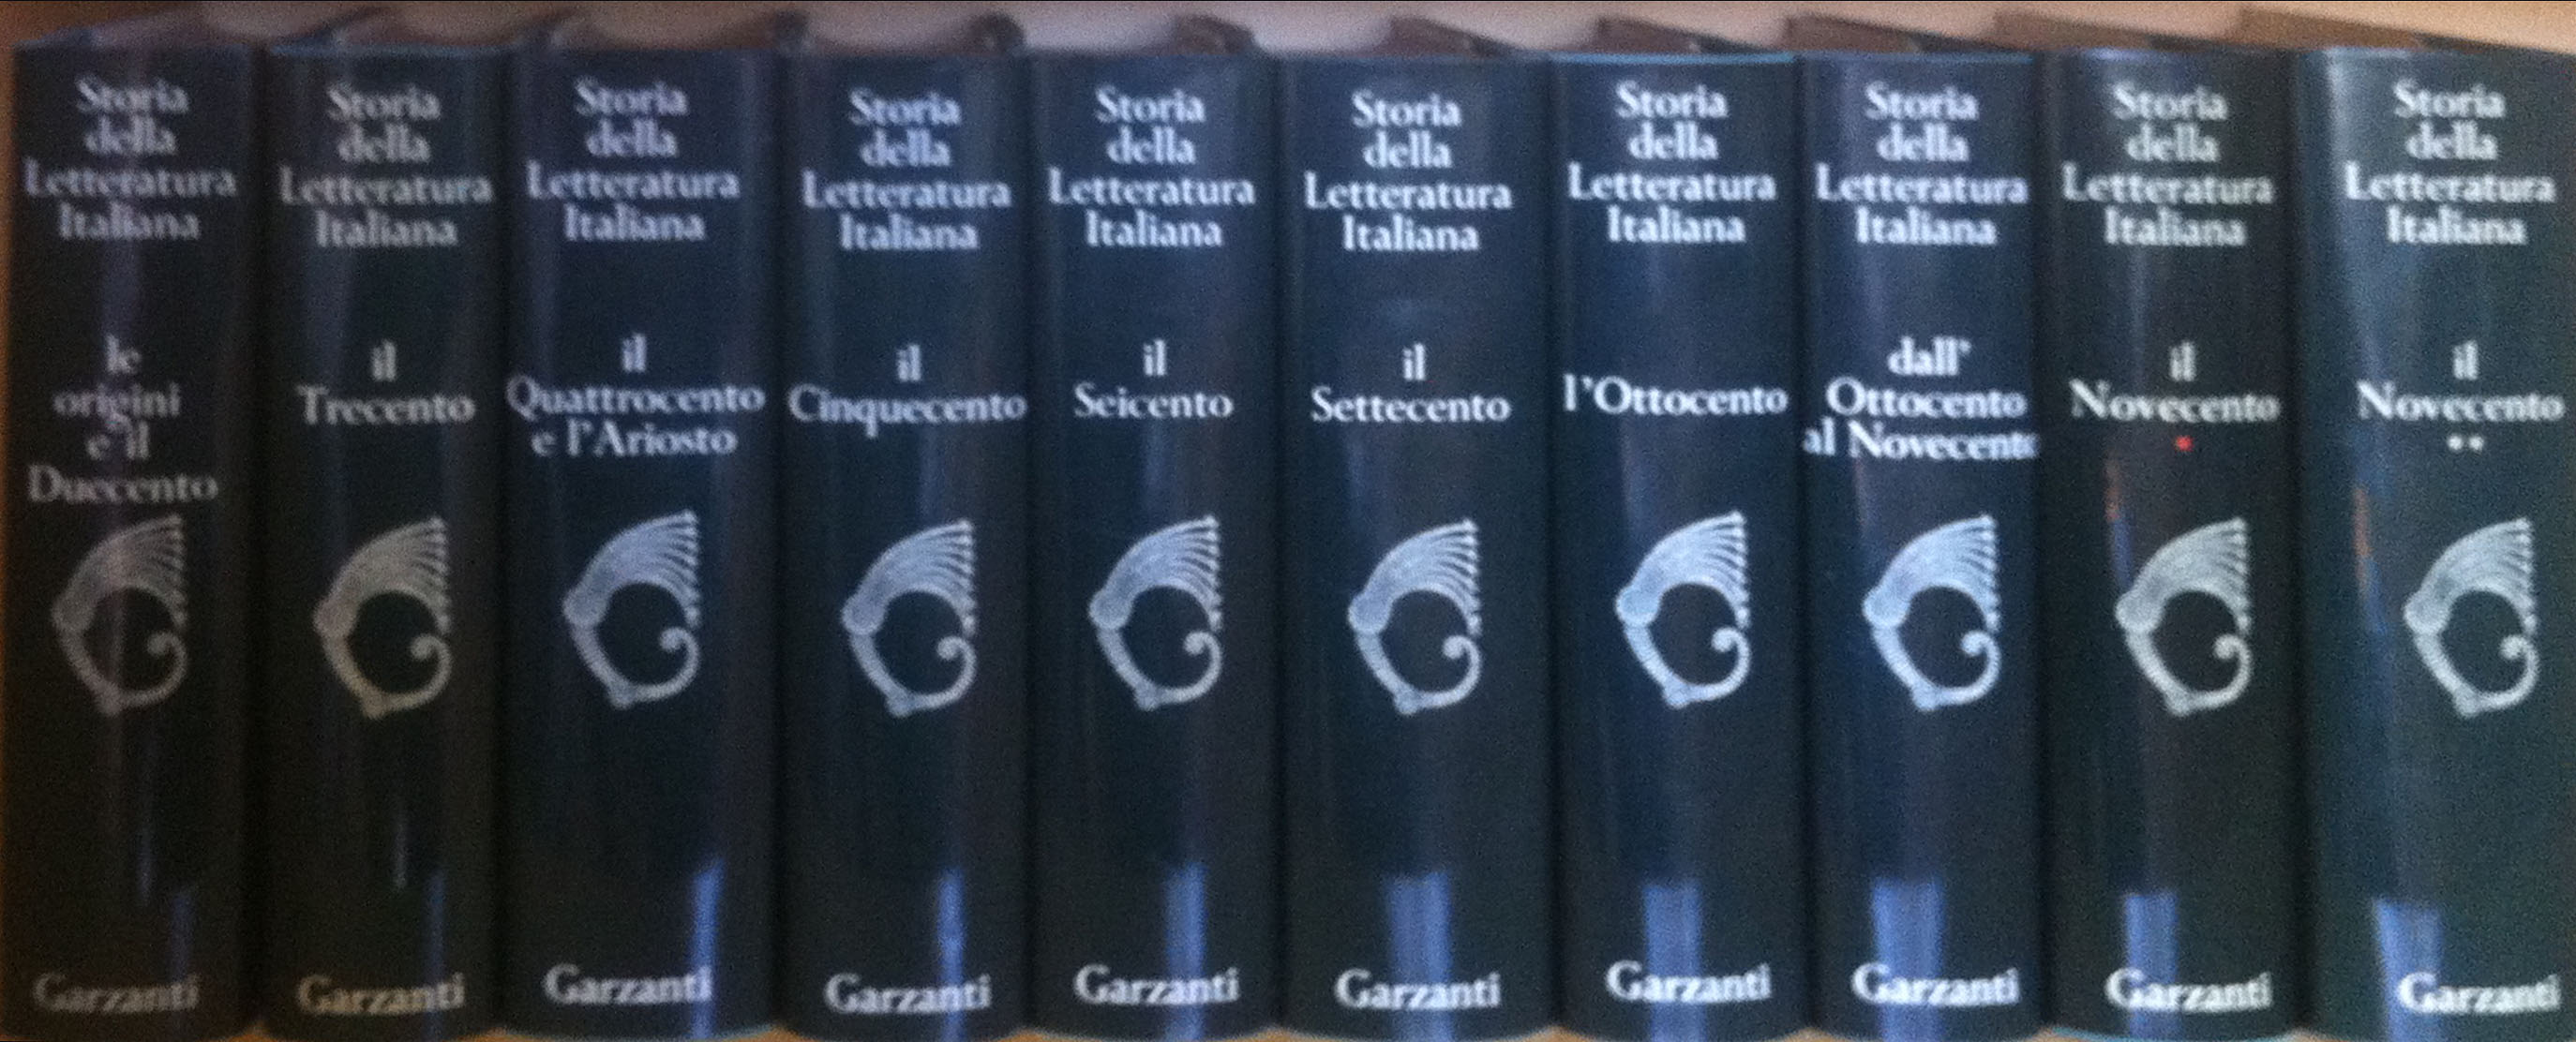 Storia della letteratura Italiana - Garzanti - VENDERE QUADRI